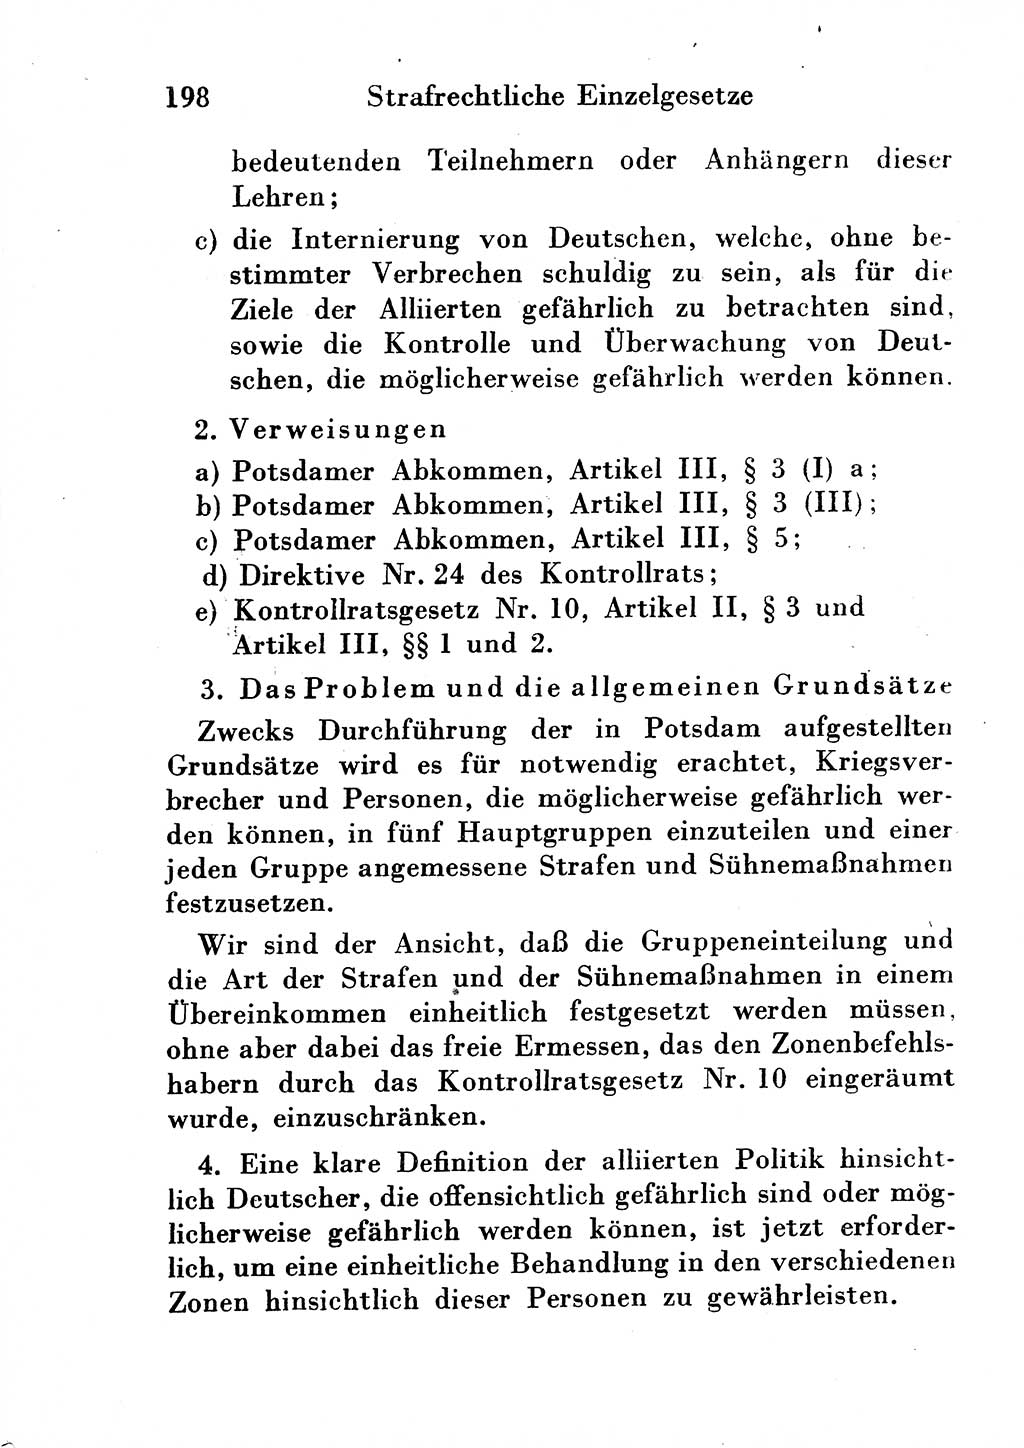 Strafgesetzbuch (StGB) und andere Strafgesetze [Deutsche Demokratische Republik (DDR)] 1954, Seite 198 (StGB Strafges. DDR 1954, S. 198)